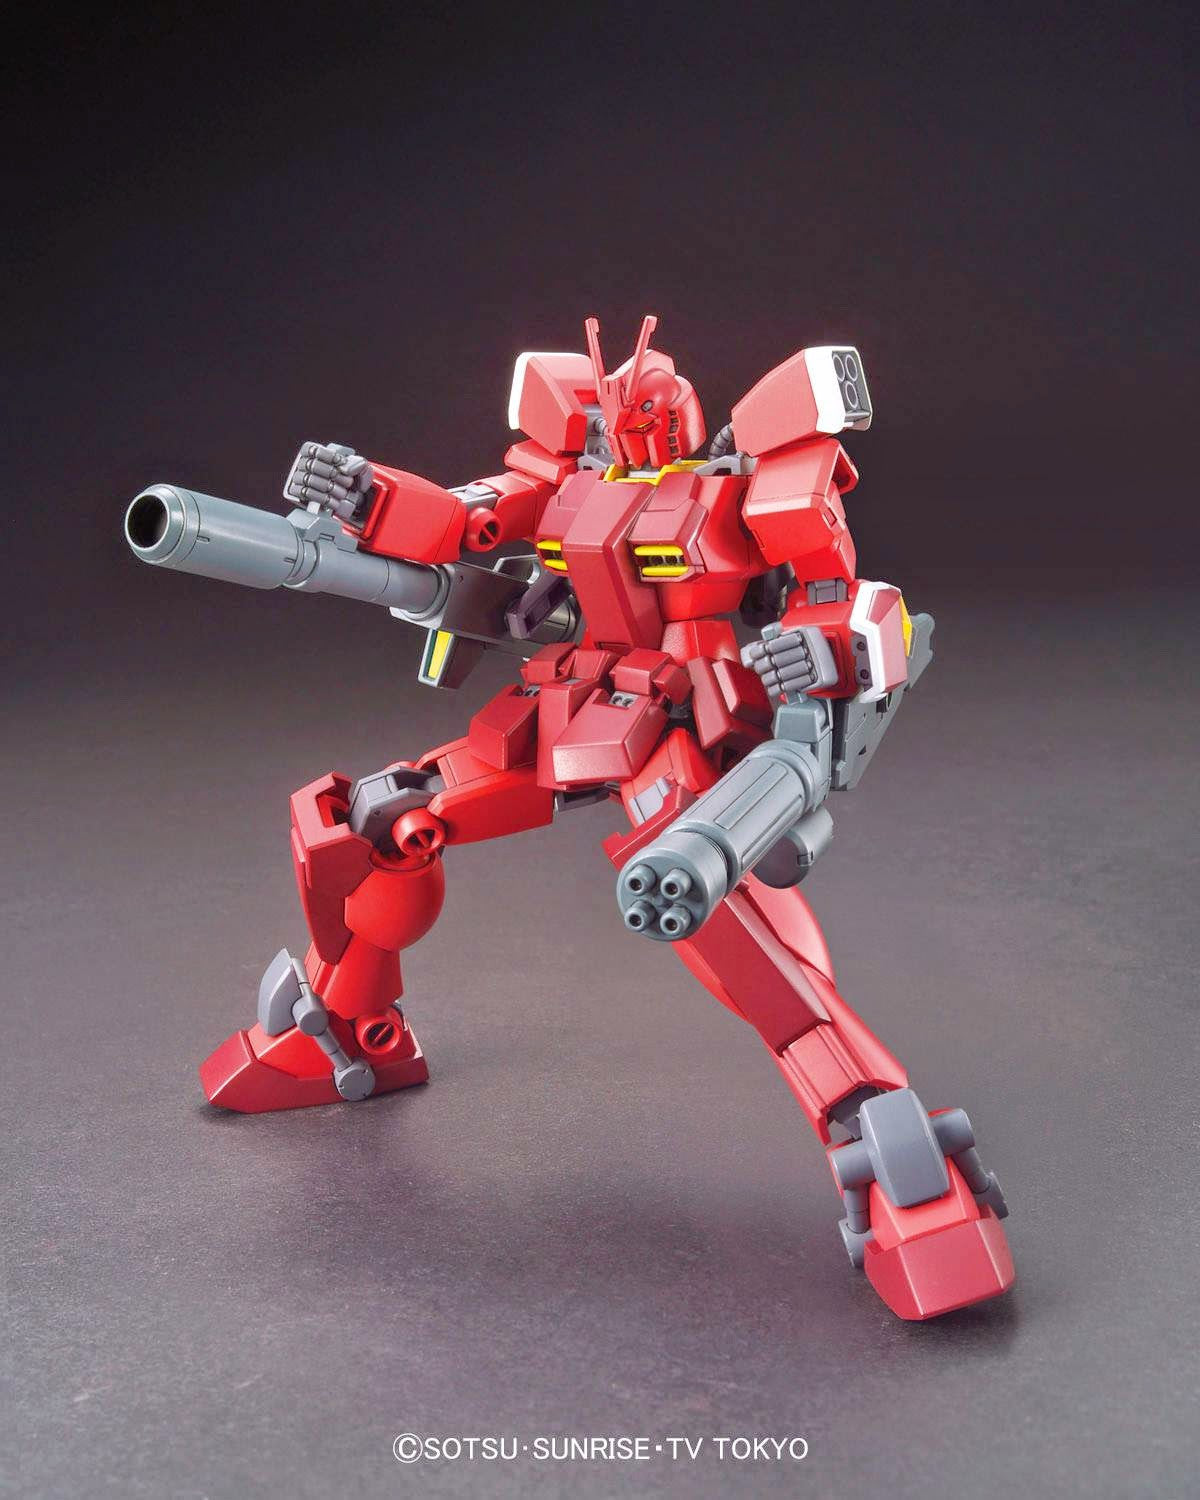 HGBF 1/144 #026 Gundam Amazing Red Warrior